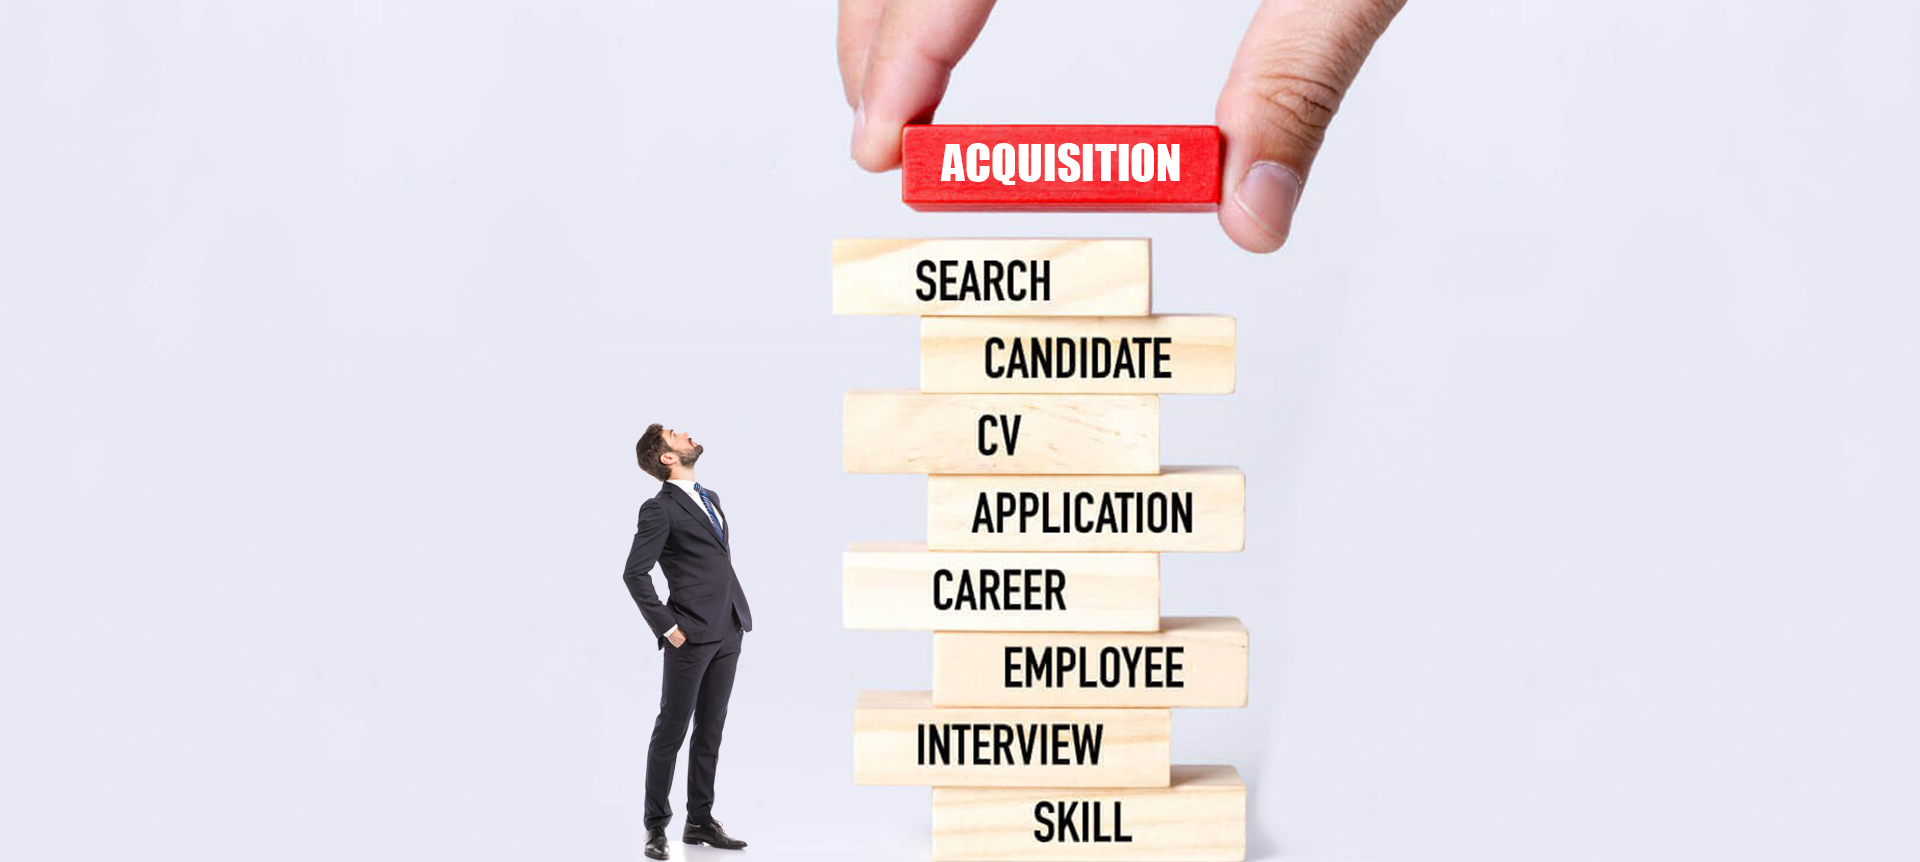 Talent acquisition process